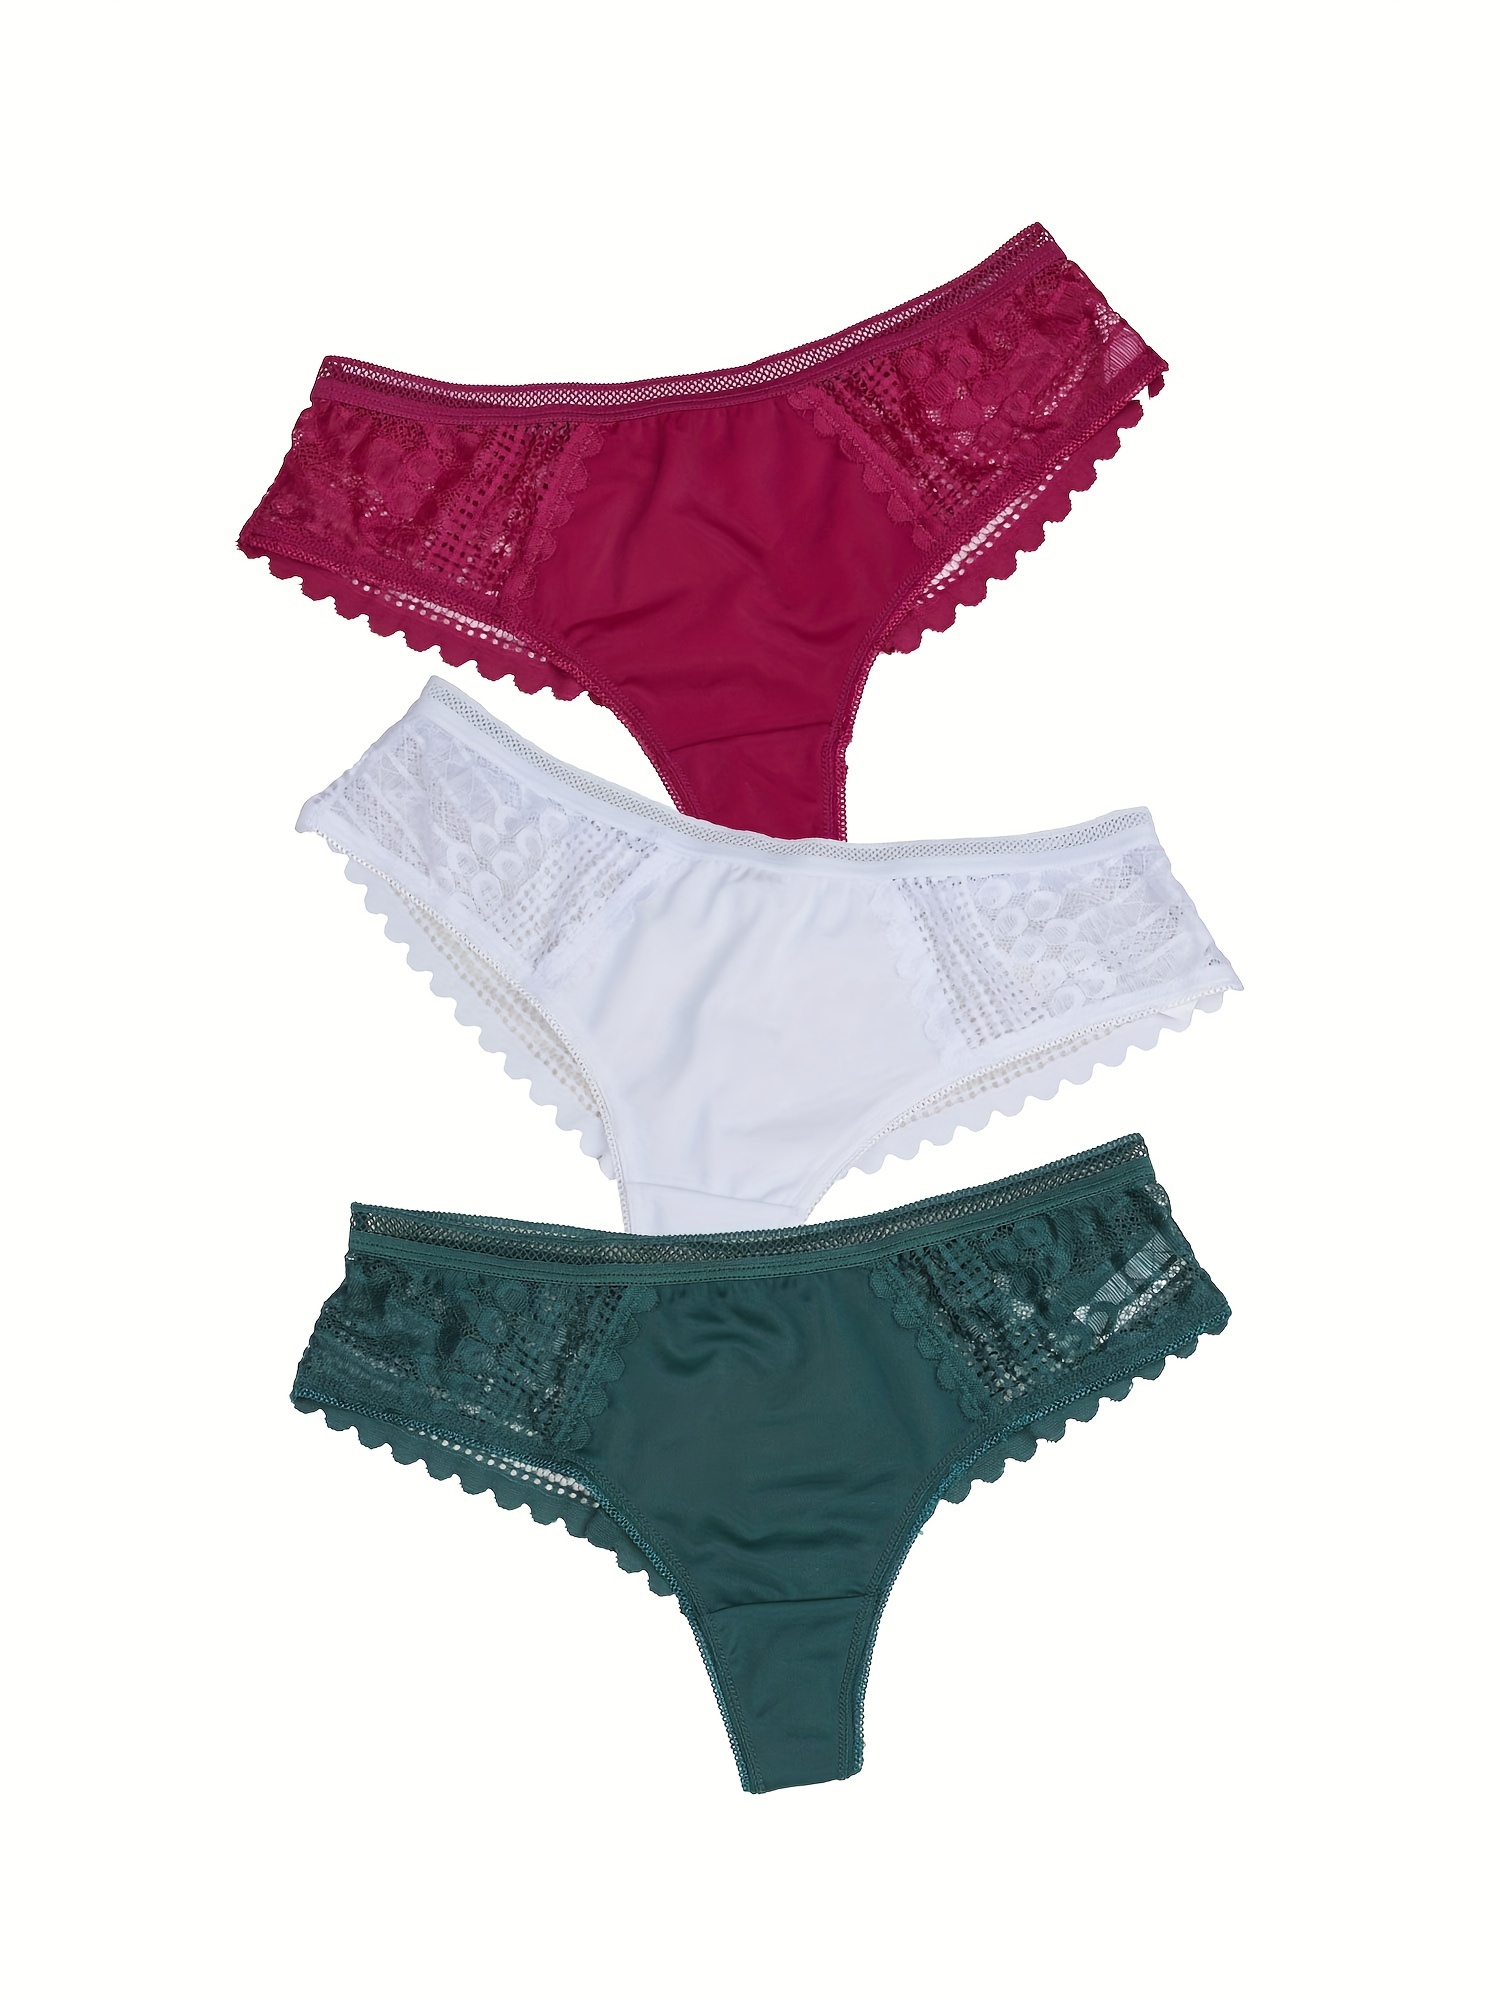 Lace Sexy Lingerie Underpants, Lace Underwear, Lace Panties